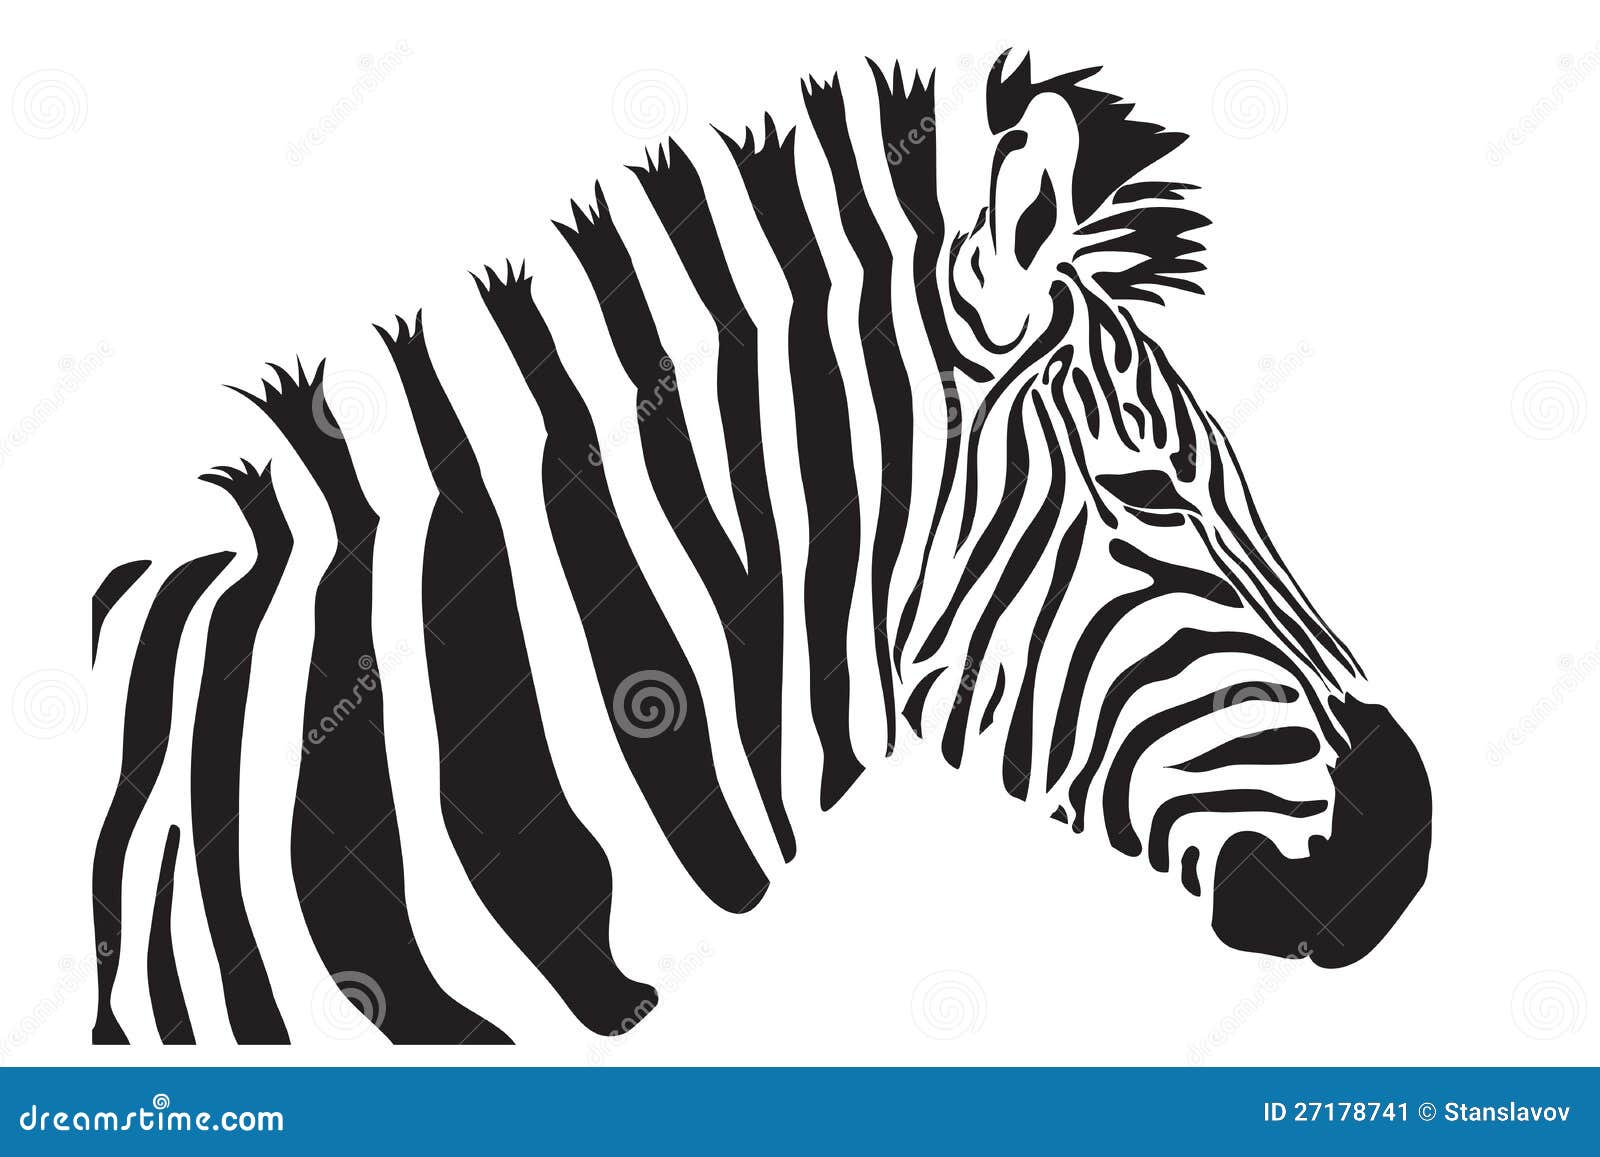 zebra silhouette clip art - photo #22